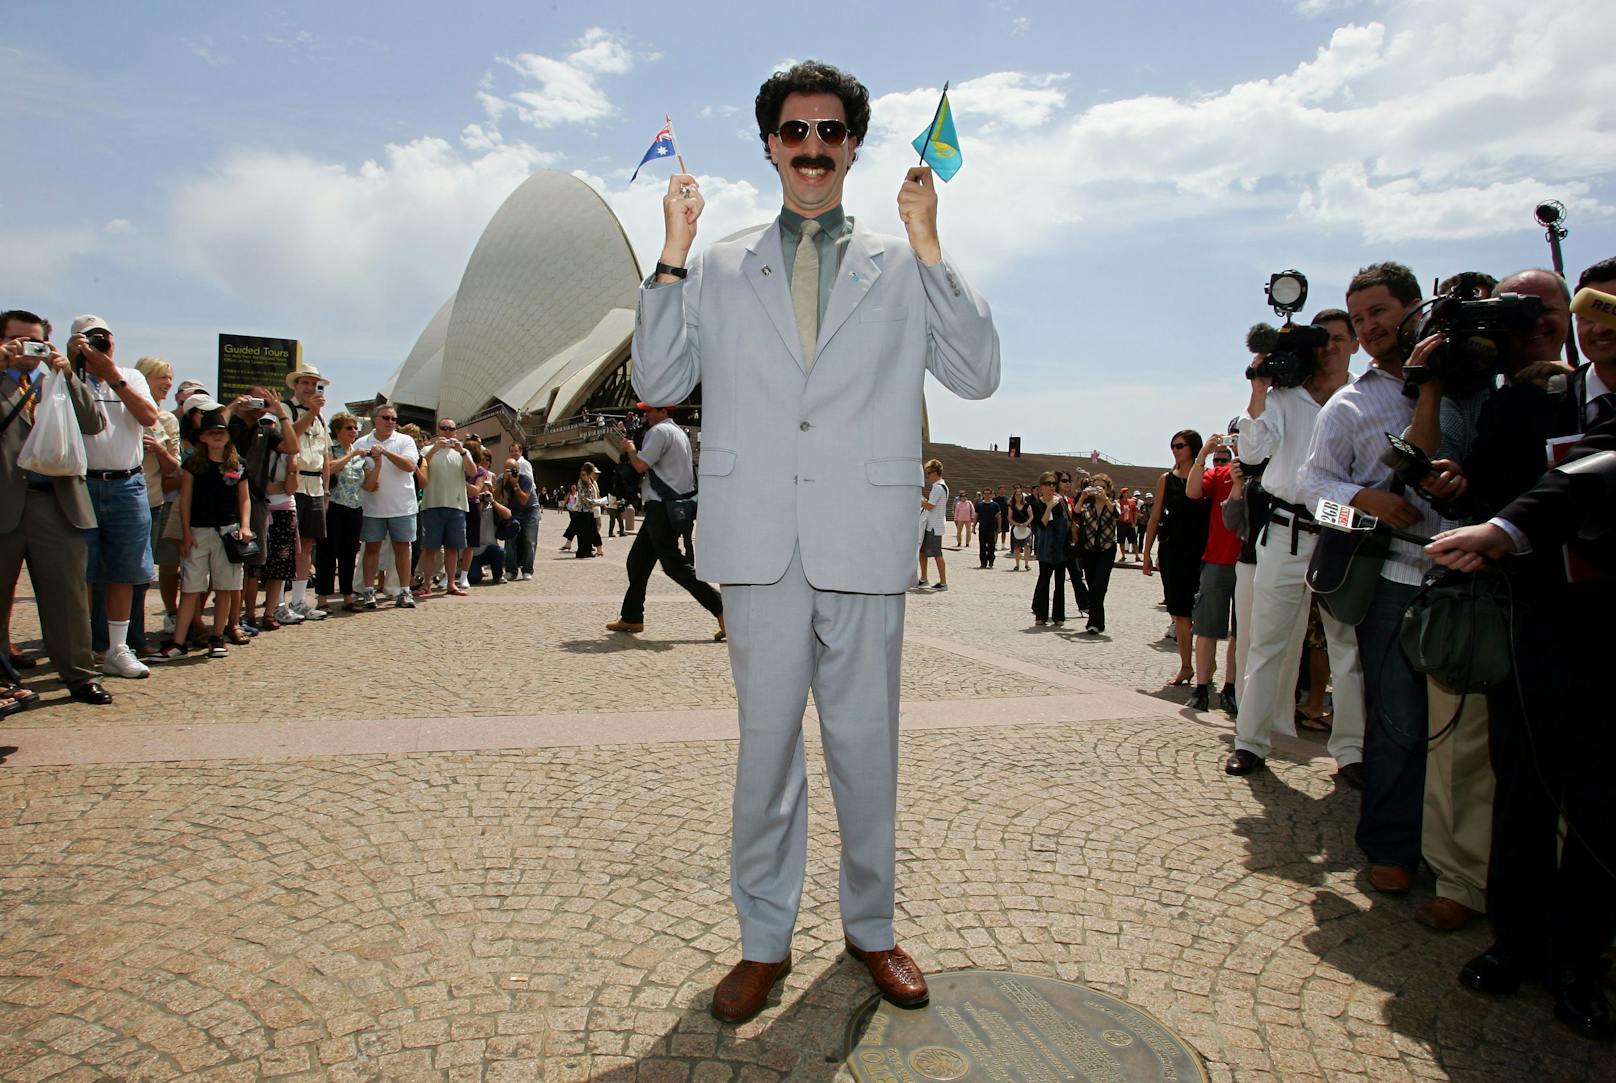 Der von Sasha Baron Cohen ins Leben gerufene Film "Borat" sorgte immer wieder für mächtigen Wirbel.